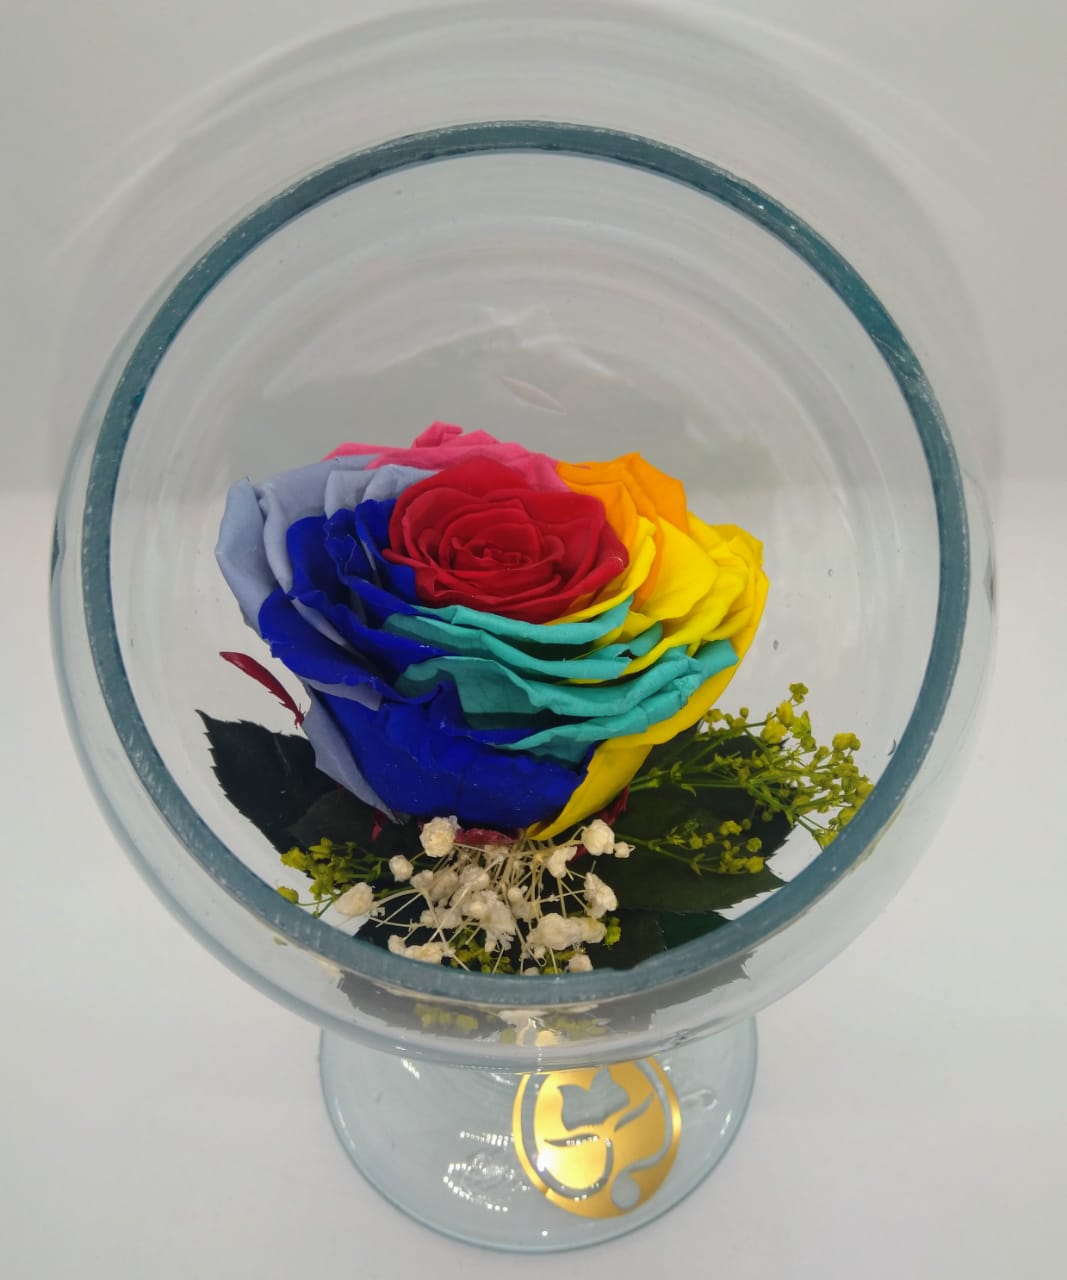 pecera de cristal con una hermosa rosa preservada rainbow multicolor